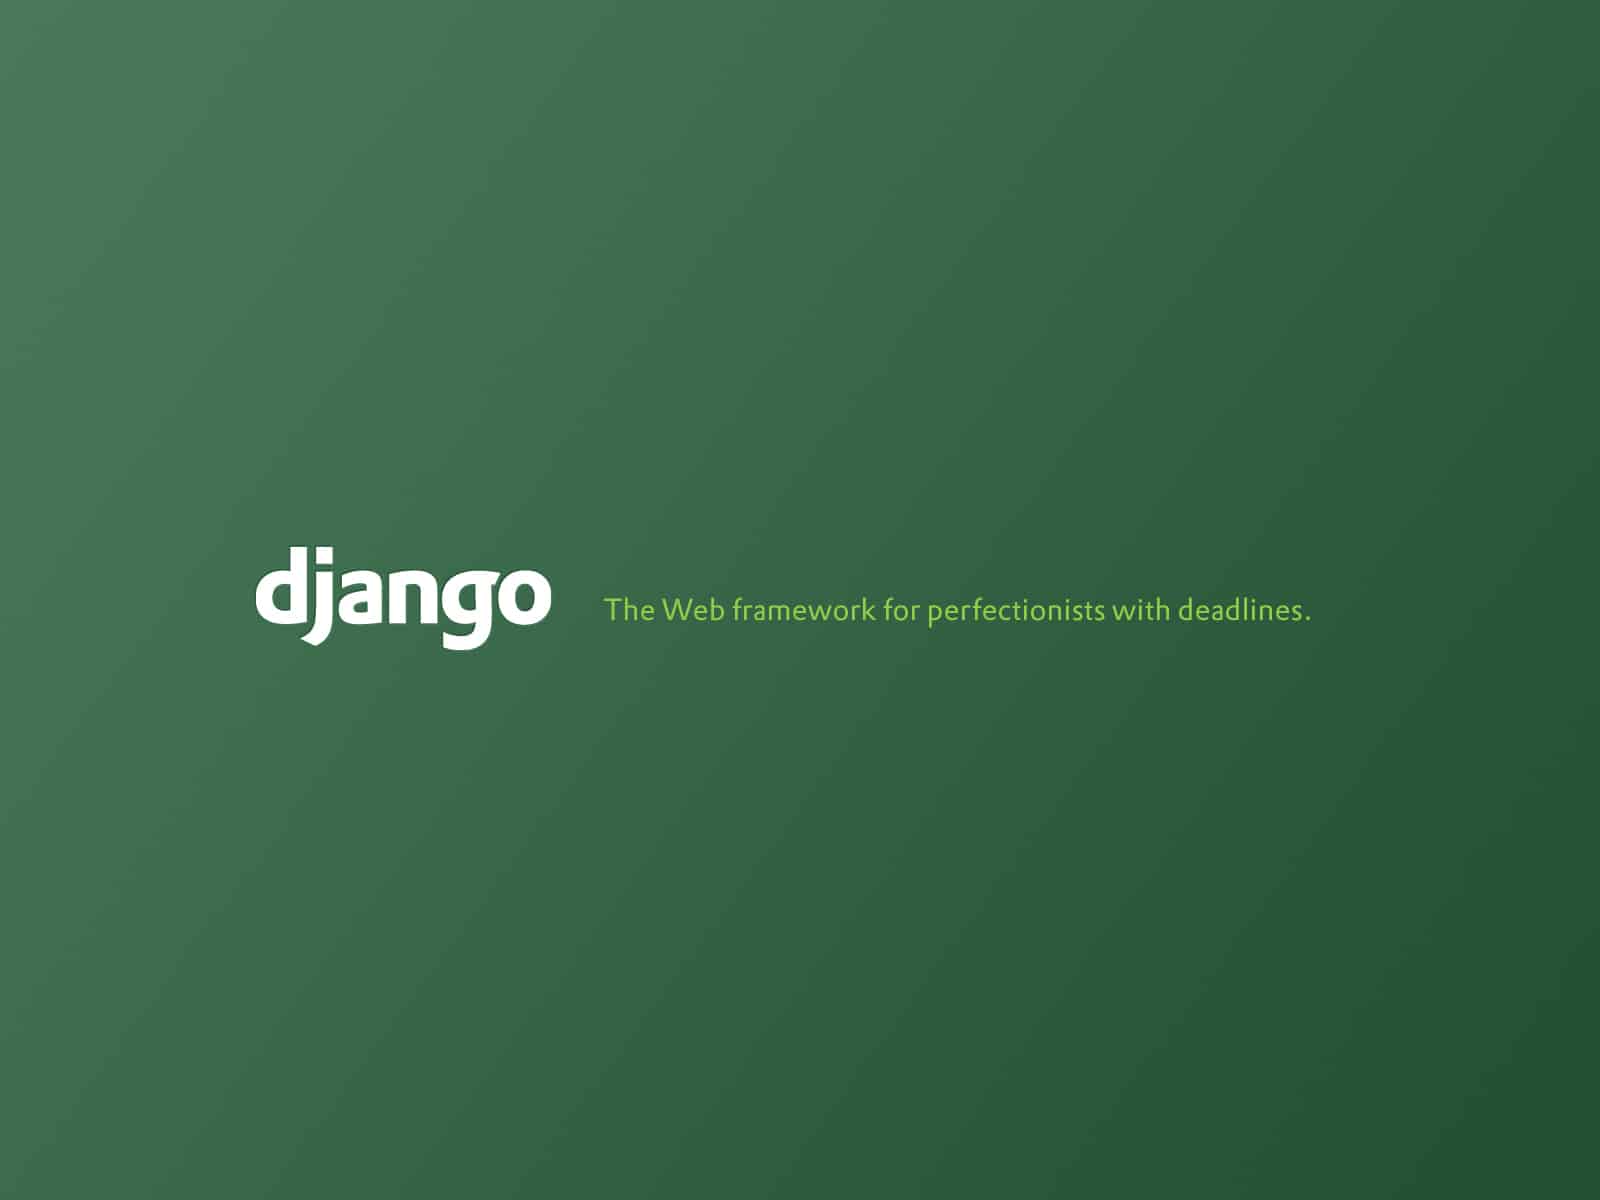 Django tagline